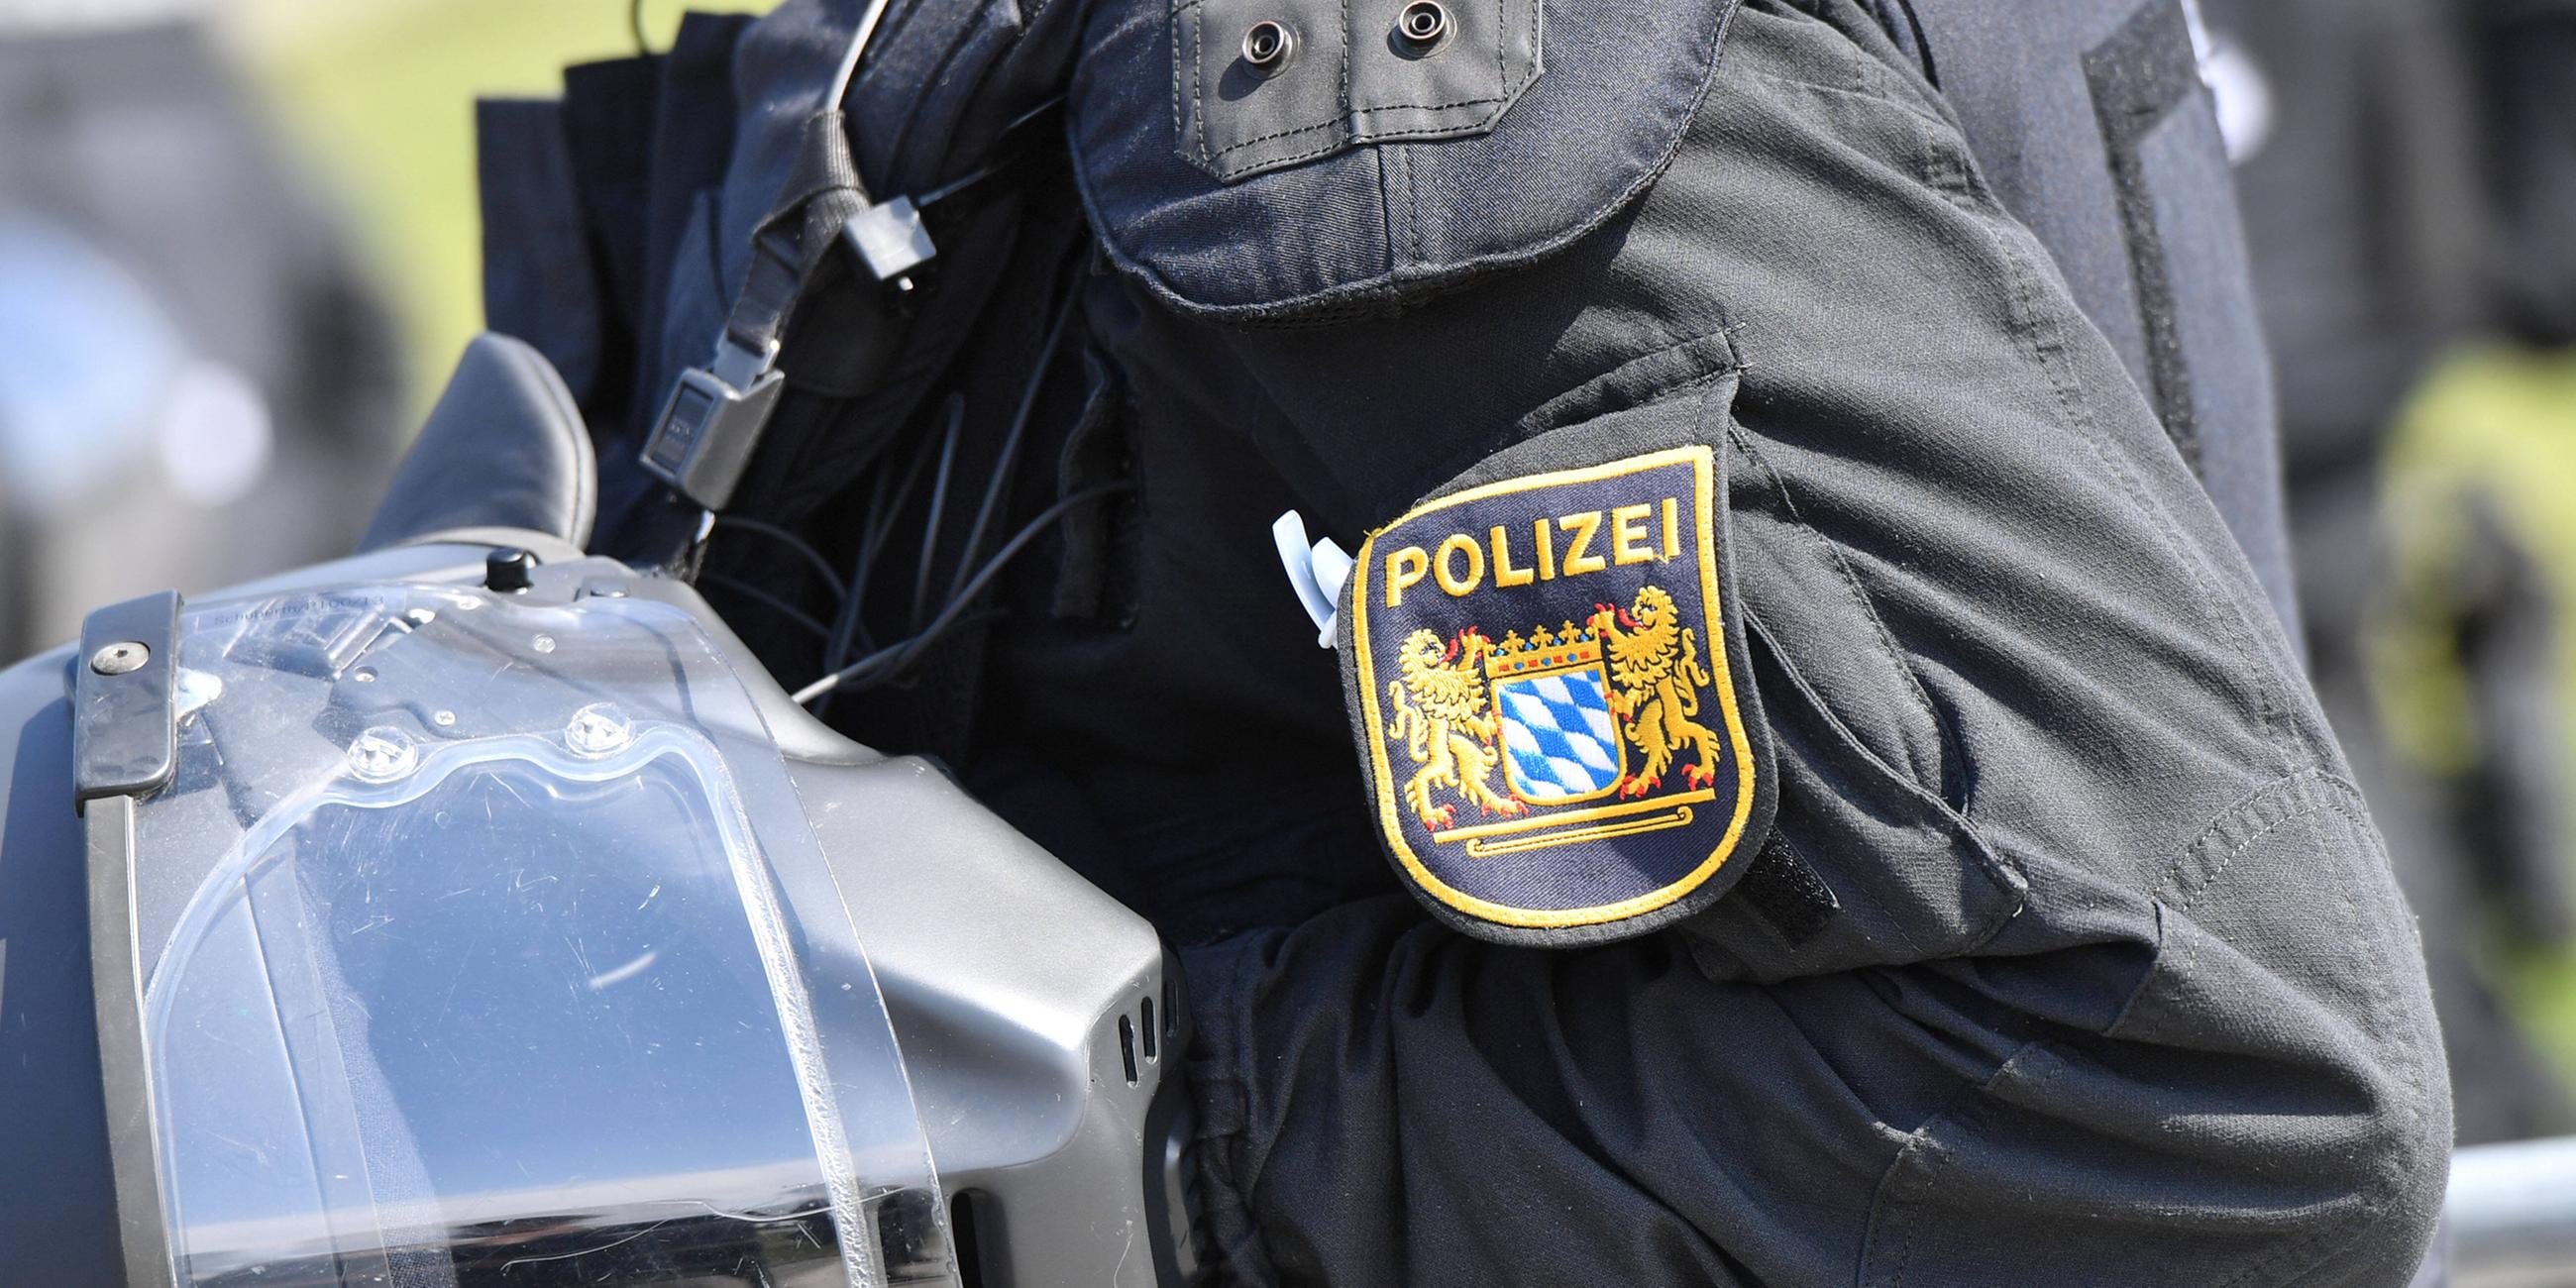 Archiv: Polizisten am 16.05.2020 in München